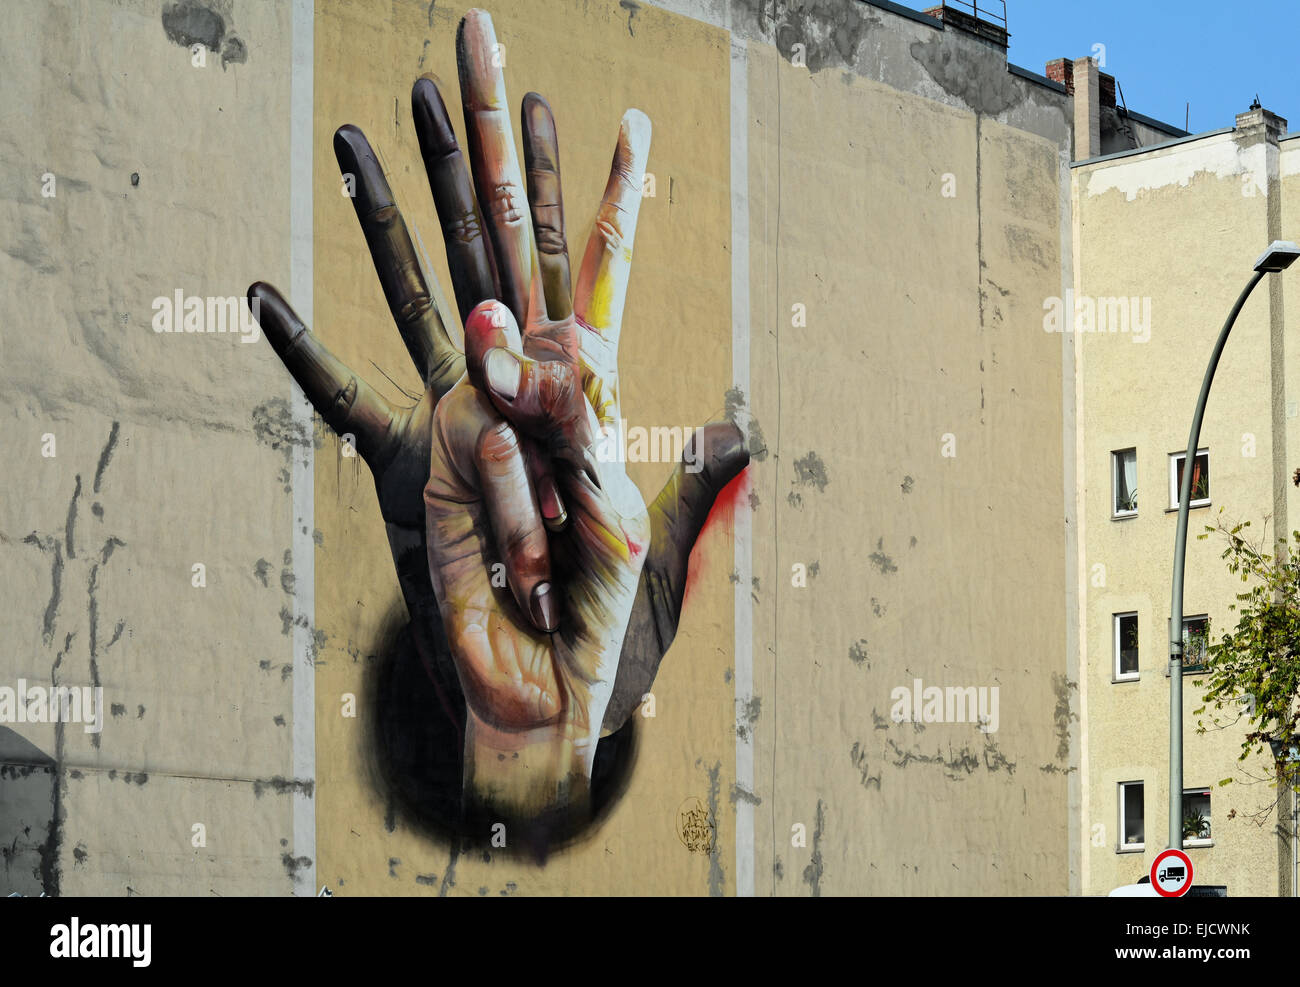 Street Art in Berlin Stock Photo